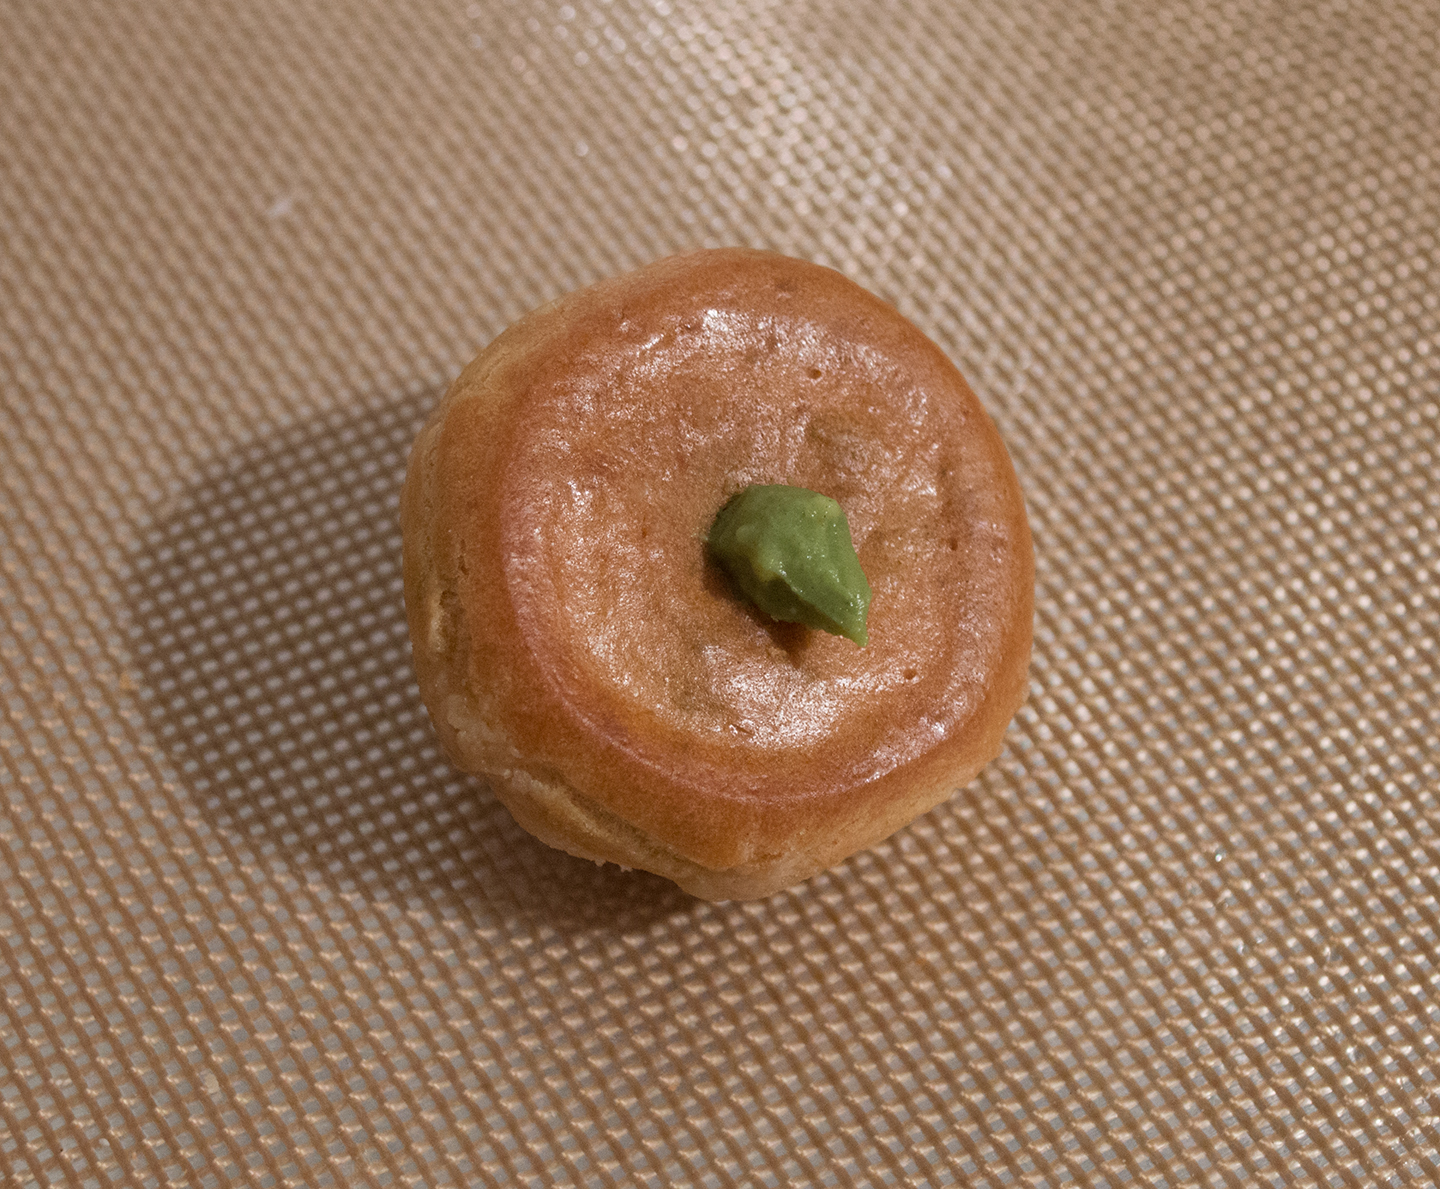 Choux à la Crème - Filled with Matcha